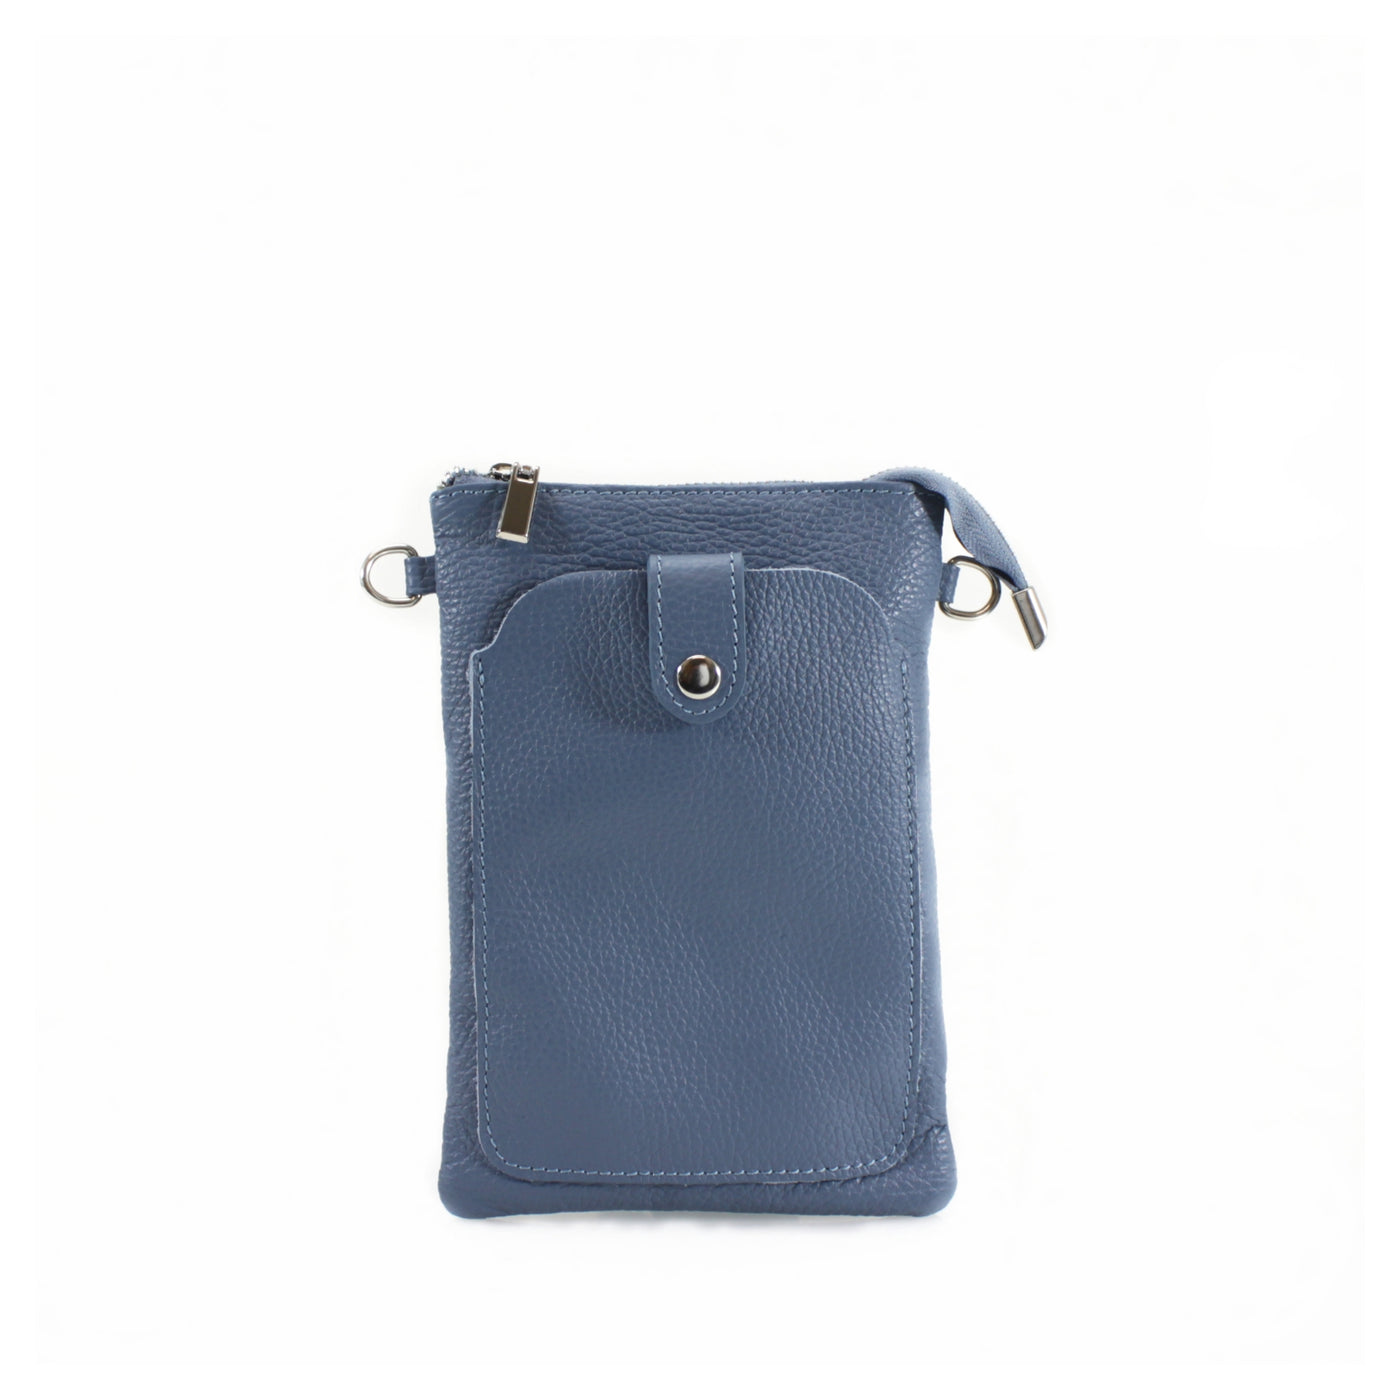 Leather Press-stud Phone Handbag - Blue